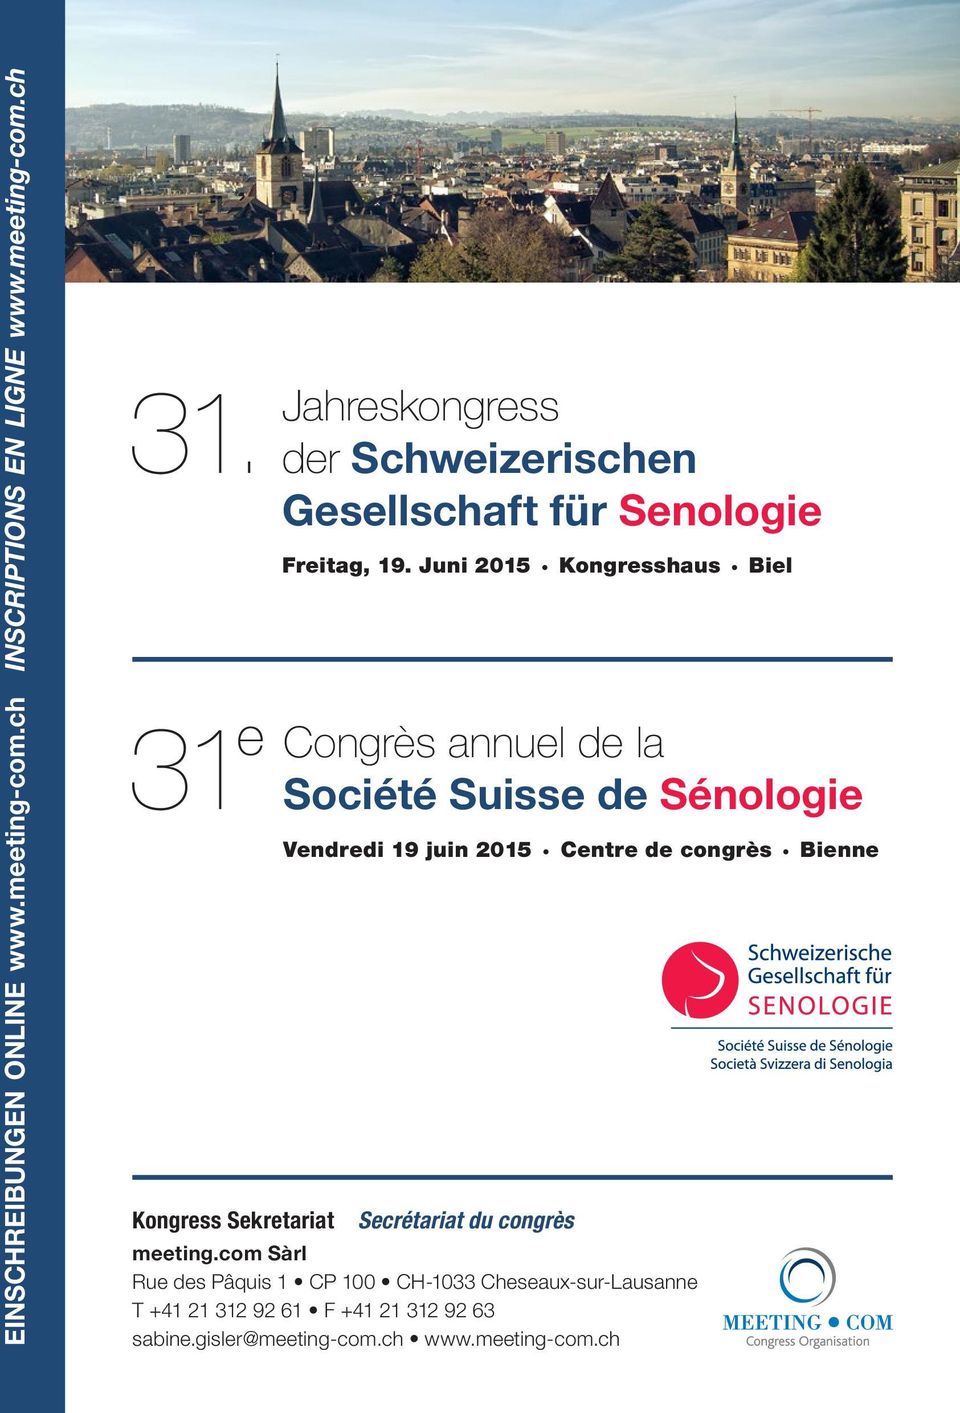 Juni 2015 Kongresshaus Biel 31 e Congrès annuel de la Société Suisse de Sénologie Vendredi 19 juin 2015 Centre de congrès